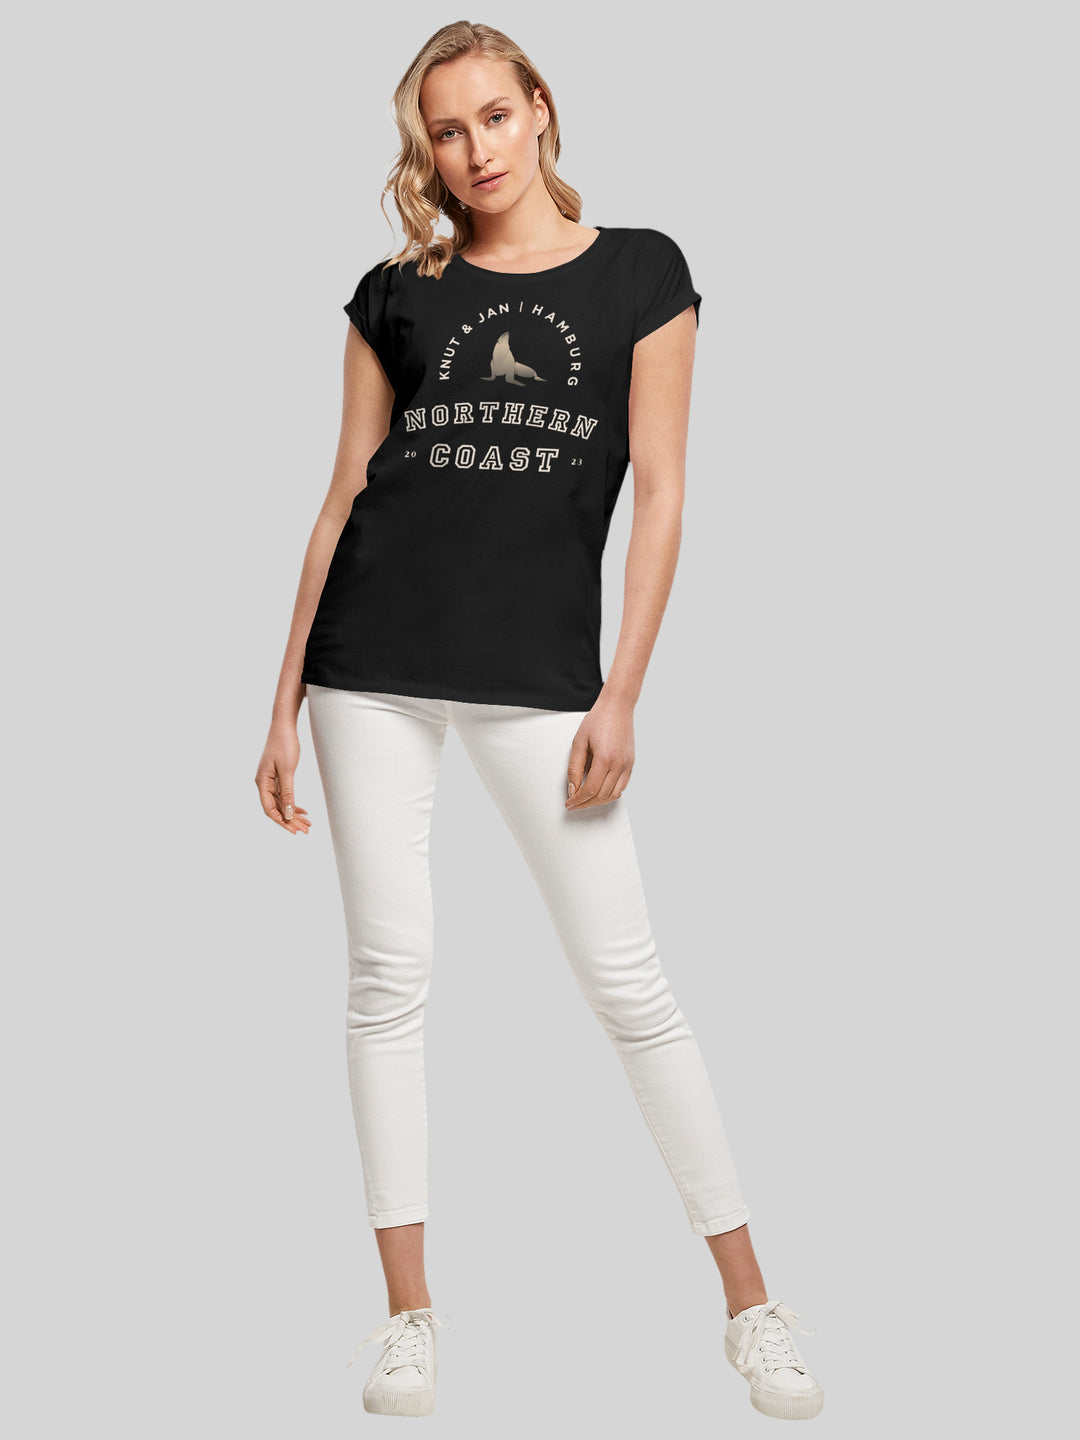 MALIN | T-Shirt Damen Robbe